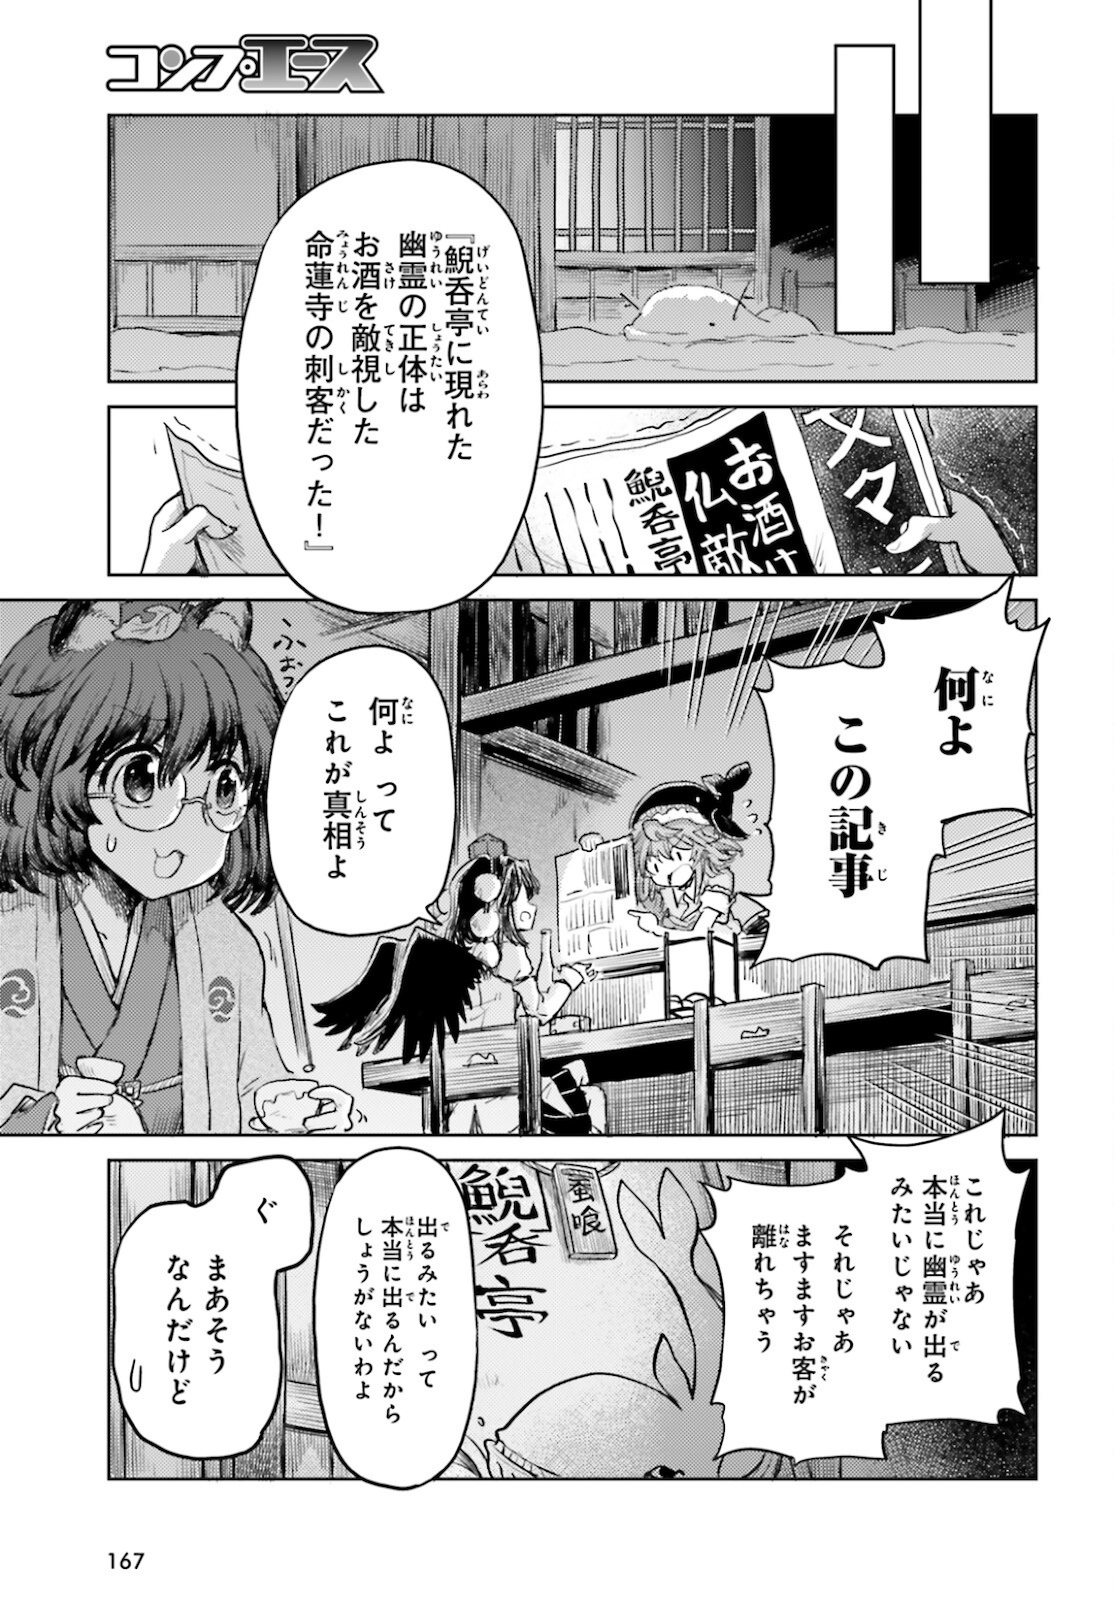 東方酔蝶華ロータスイーター達の酔醒 第17話 - Page 17